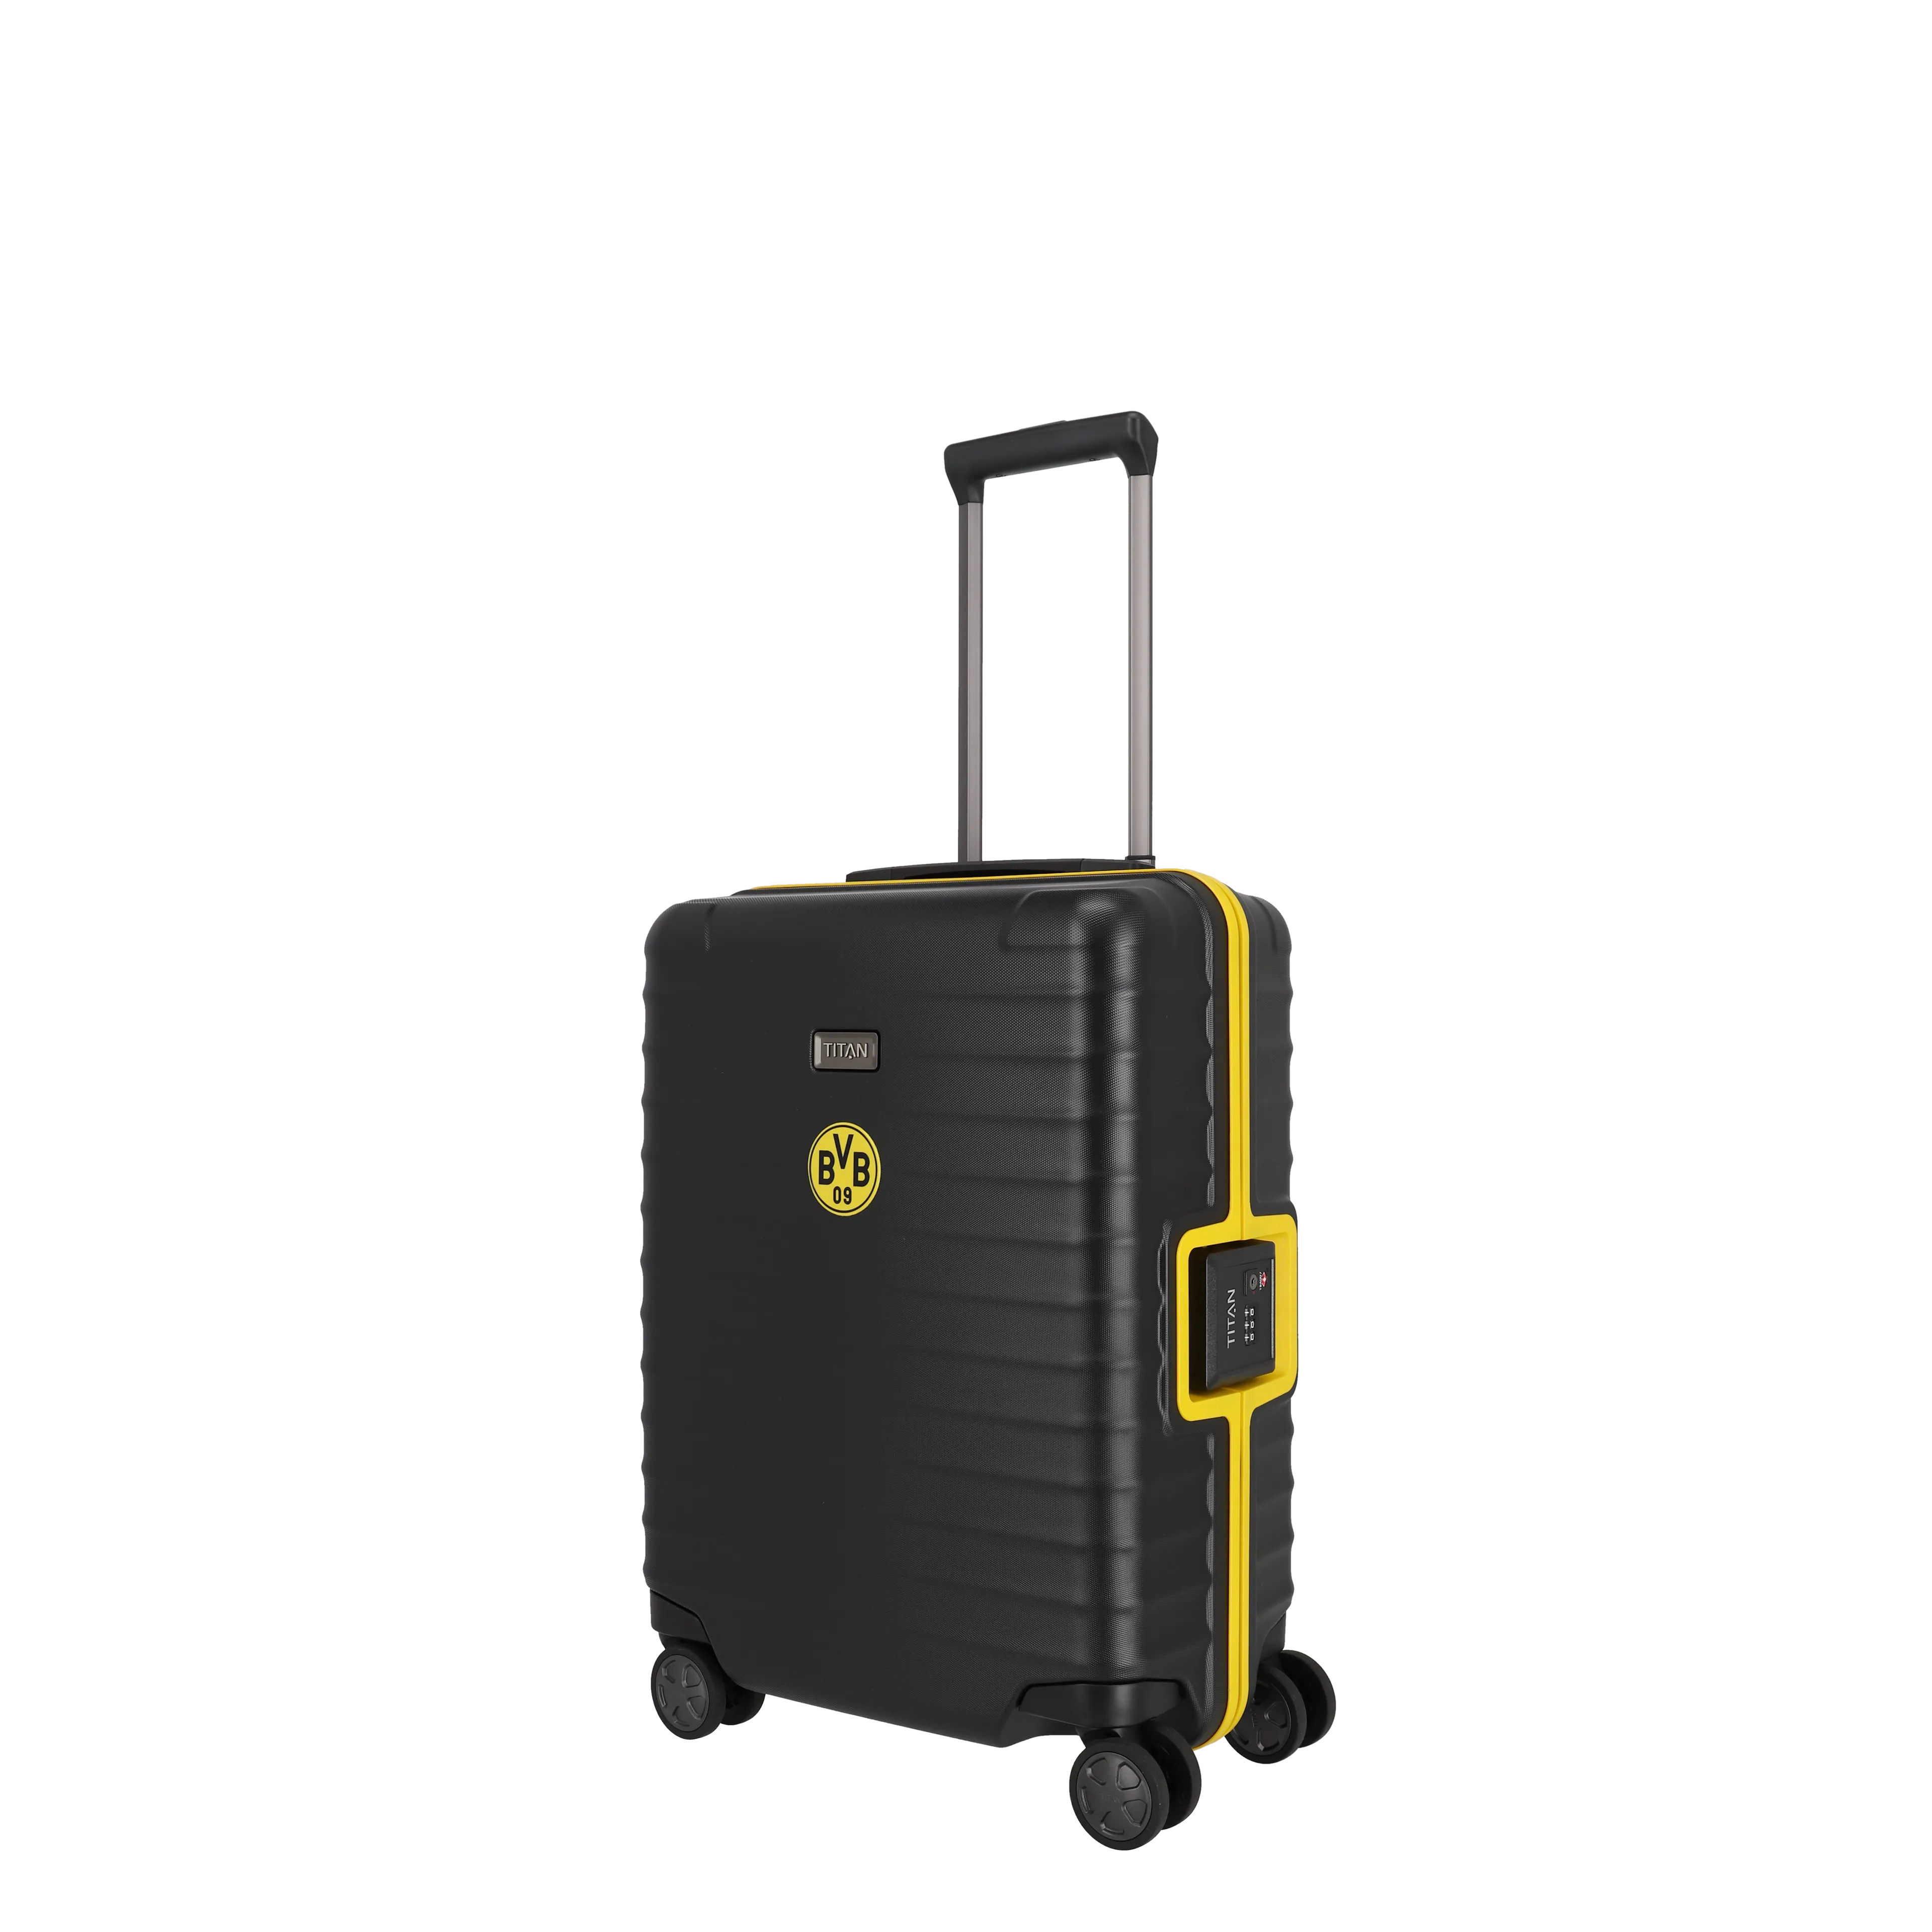 Ein TITAN Koffer der Serie LITRON Frame BVB Edition Schrägansicht in schwarz/gelb Größe S 55cm